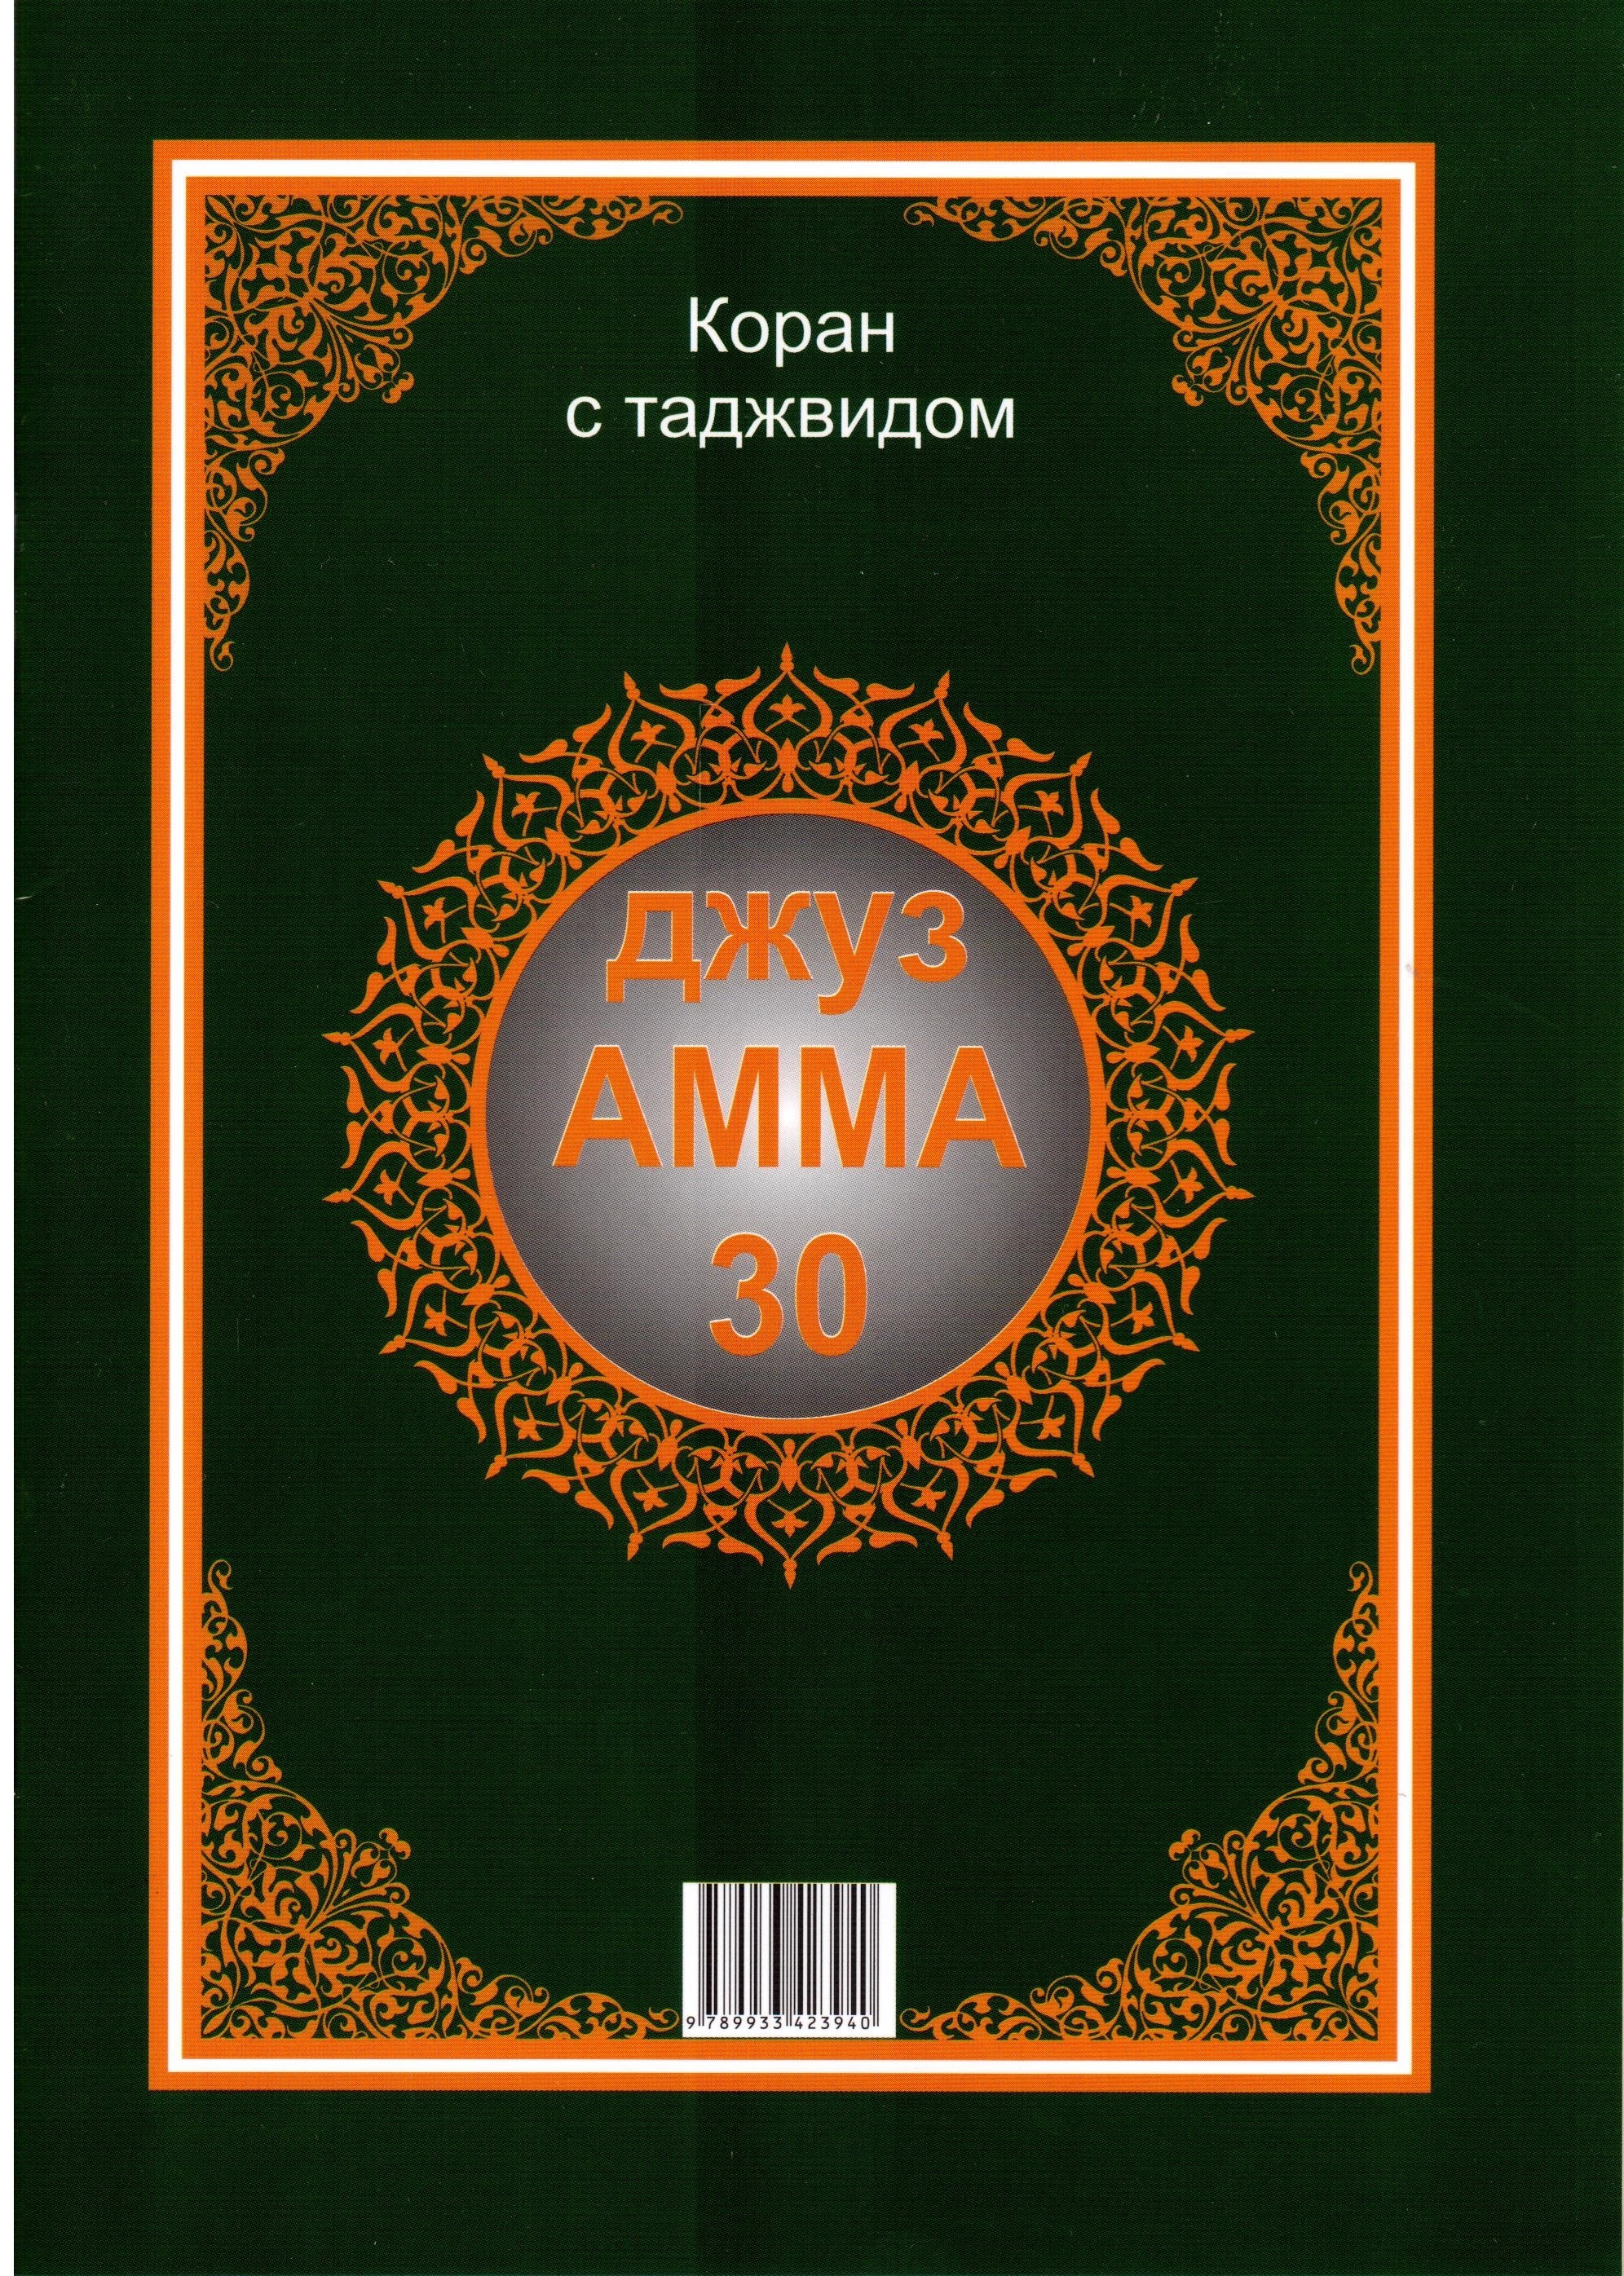 Книгу коран на татарском языке скачать бесплатно